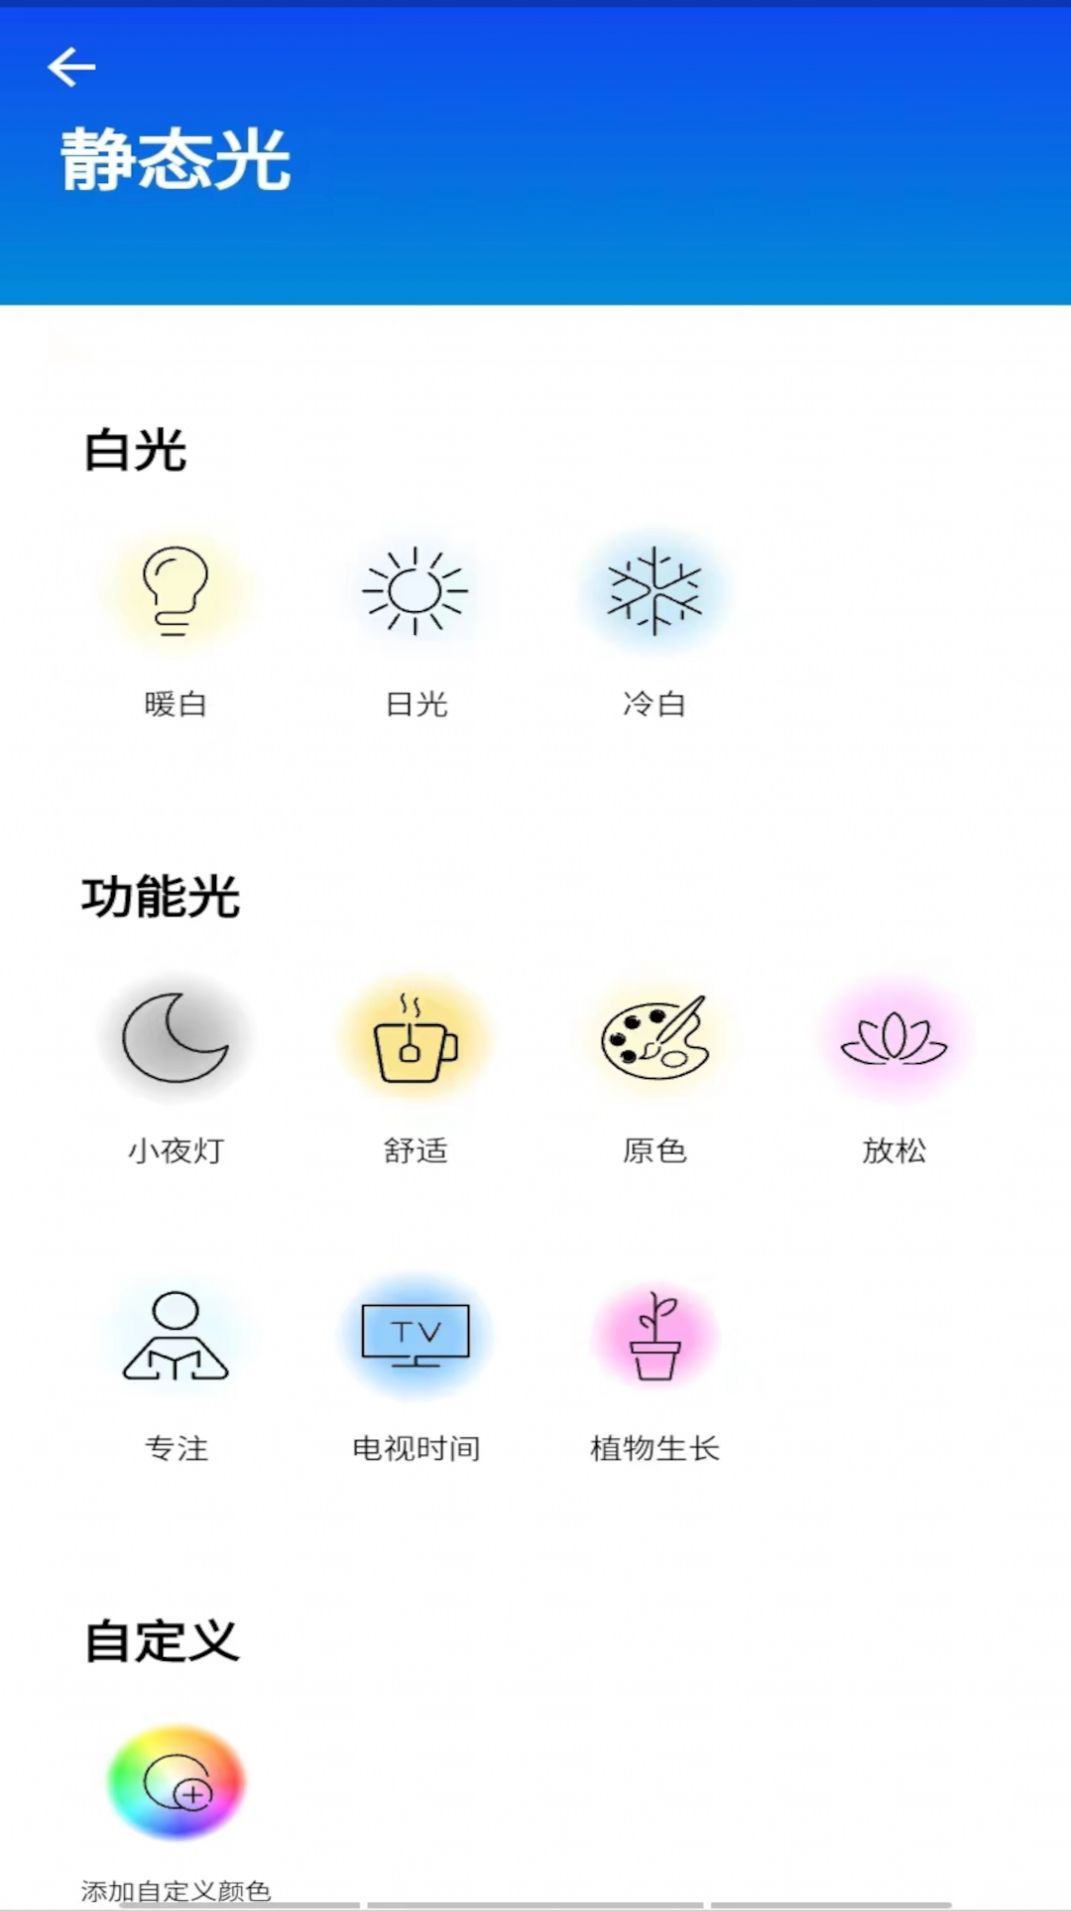 WiZ CN V2照明设备助手app下载